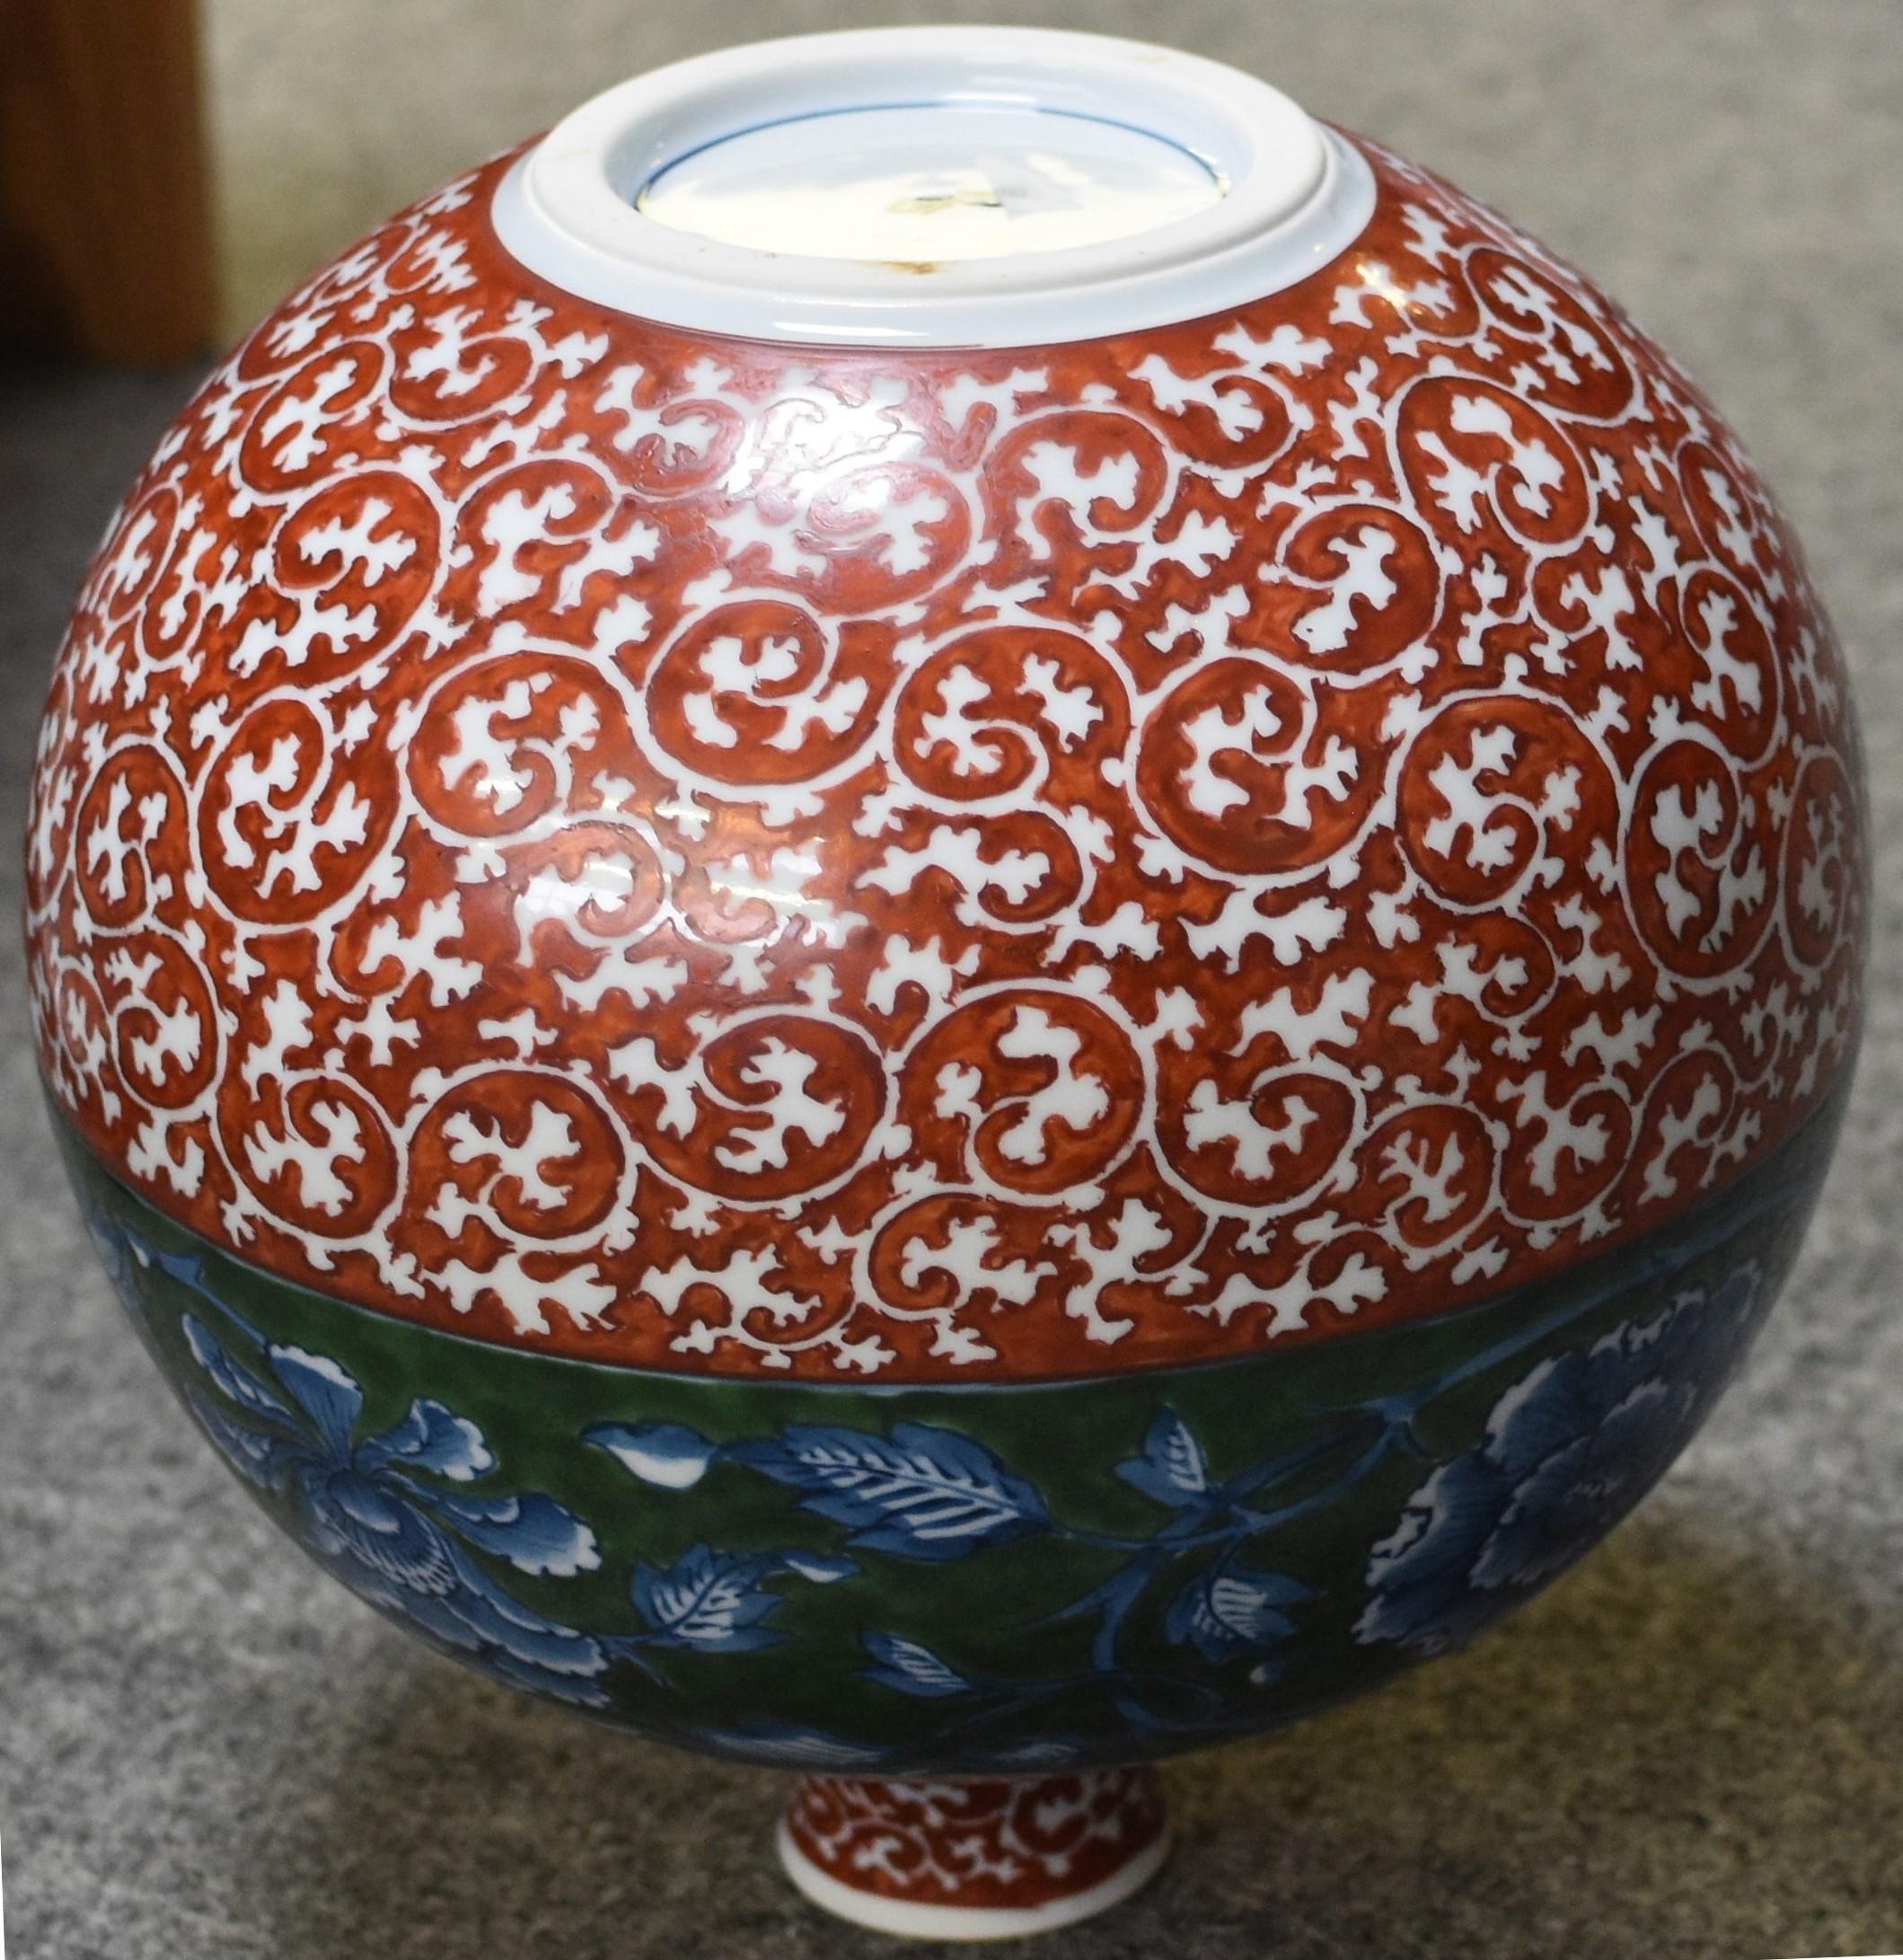 Die exquisite Vase zeigt ein verheißungsvolles traditionelles Arita-Arabesken- oder Karakusa-Muster in tiefem Rot. Dazu hat der Künstler ein breites grünes Band mit kühnen Blumen unter der Glasur hinzugefügt, das die Eleganz dieses auffälligen